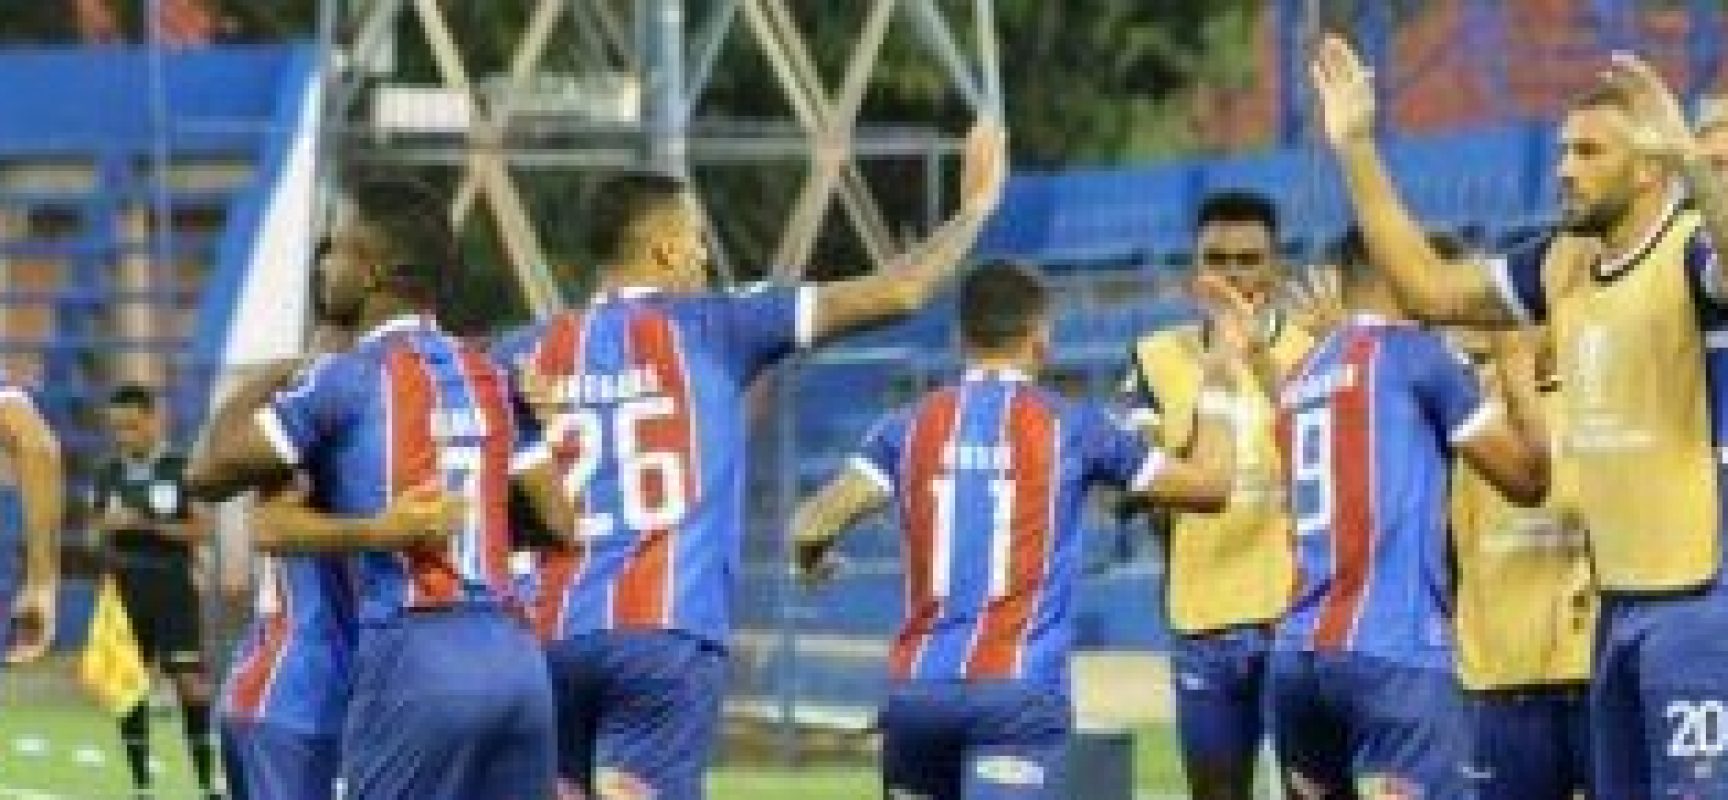 Bahia conquista triunfo histórico e avança de fase na Copa Sul-Americana